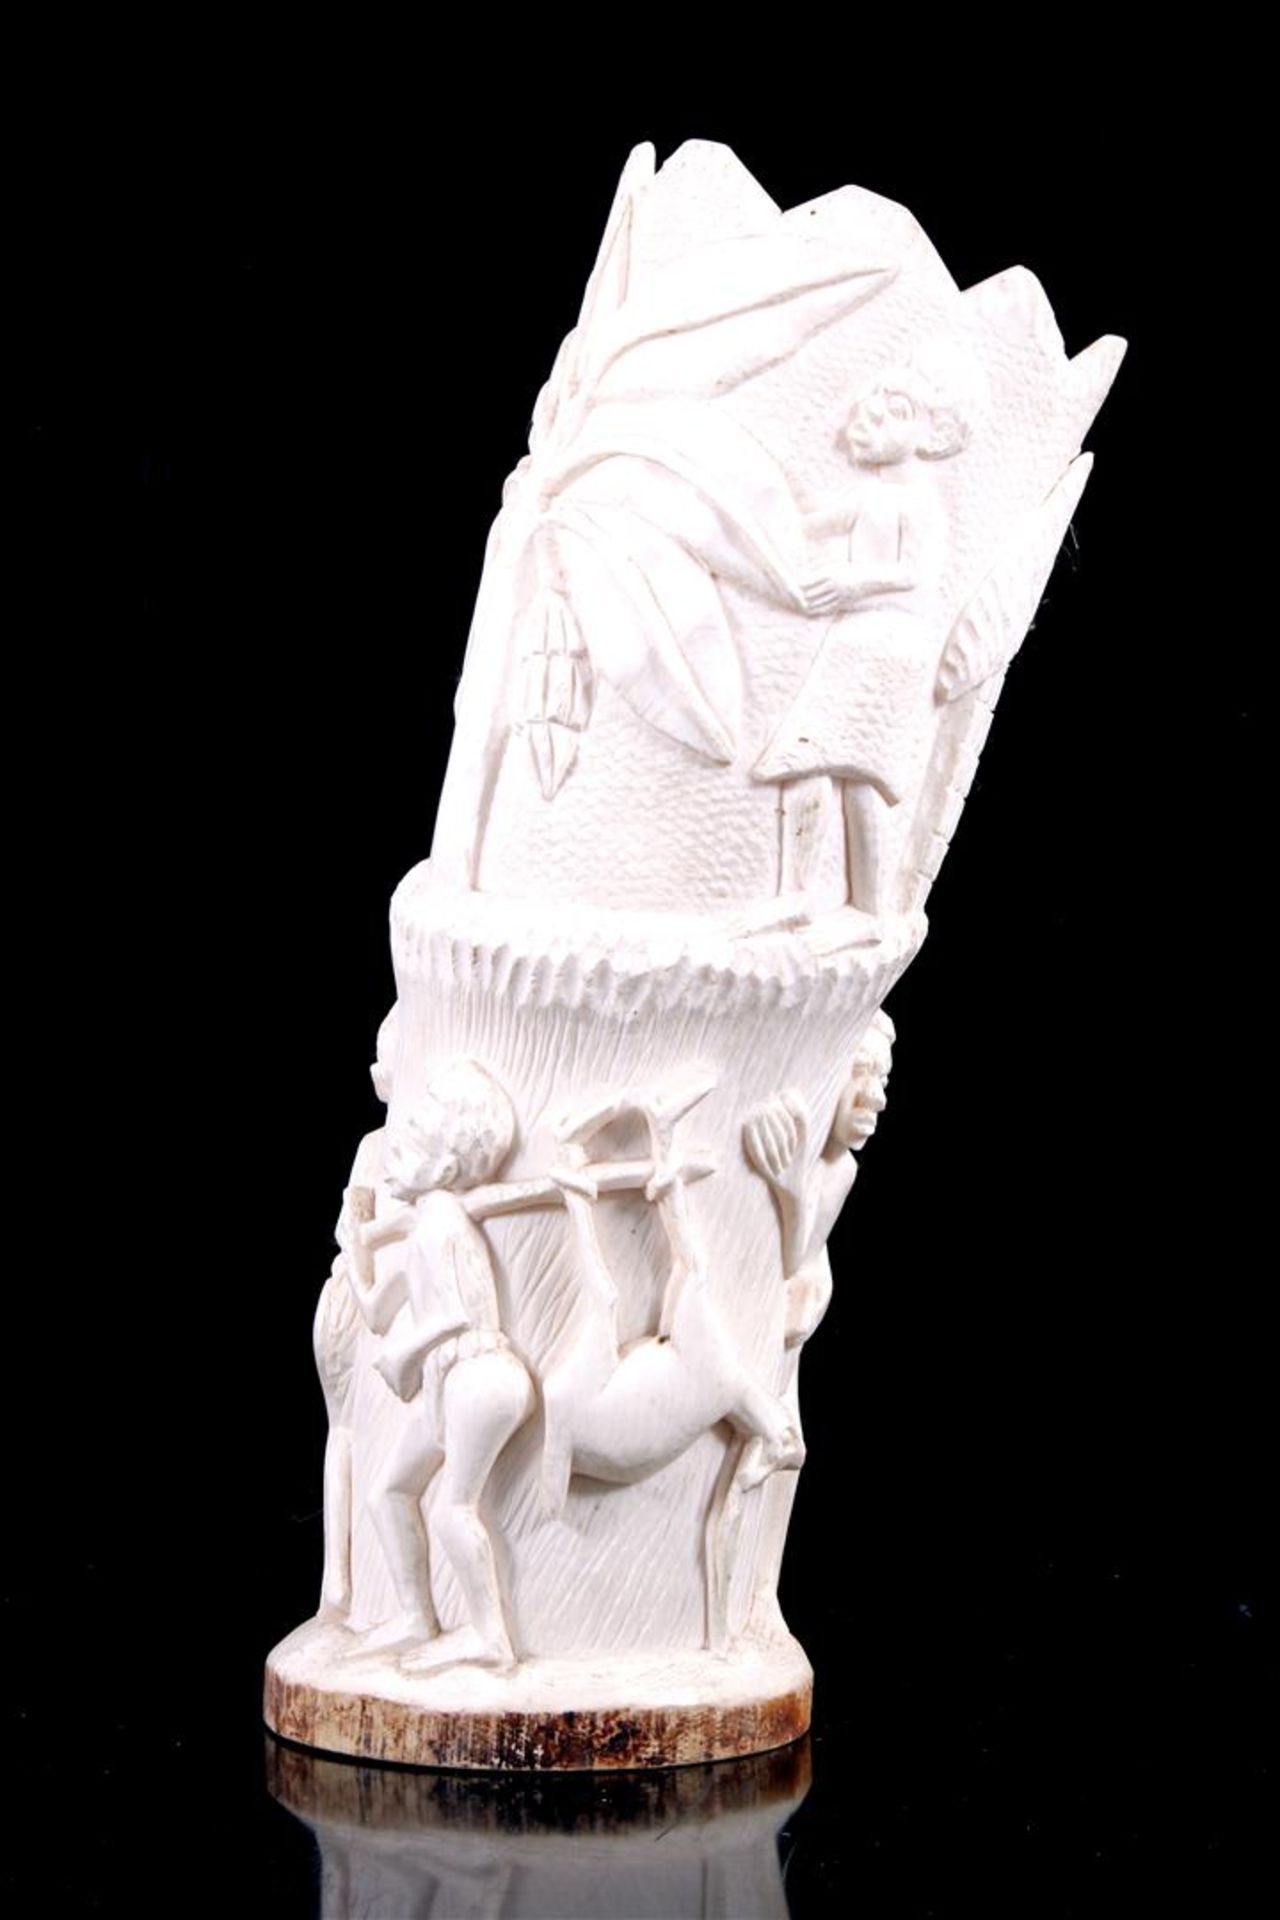 Rijkgestoken ivoren sculptuur met decor van dansende figuren, Afrika ca. 1900, 35 cm hoog, 1555 gram